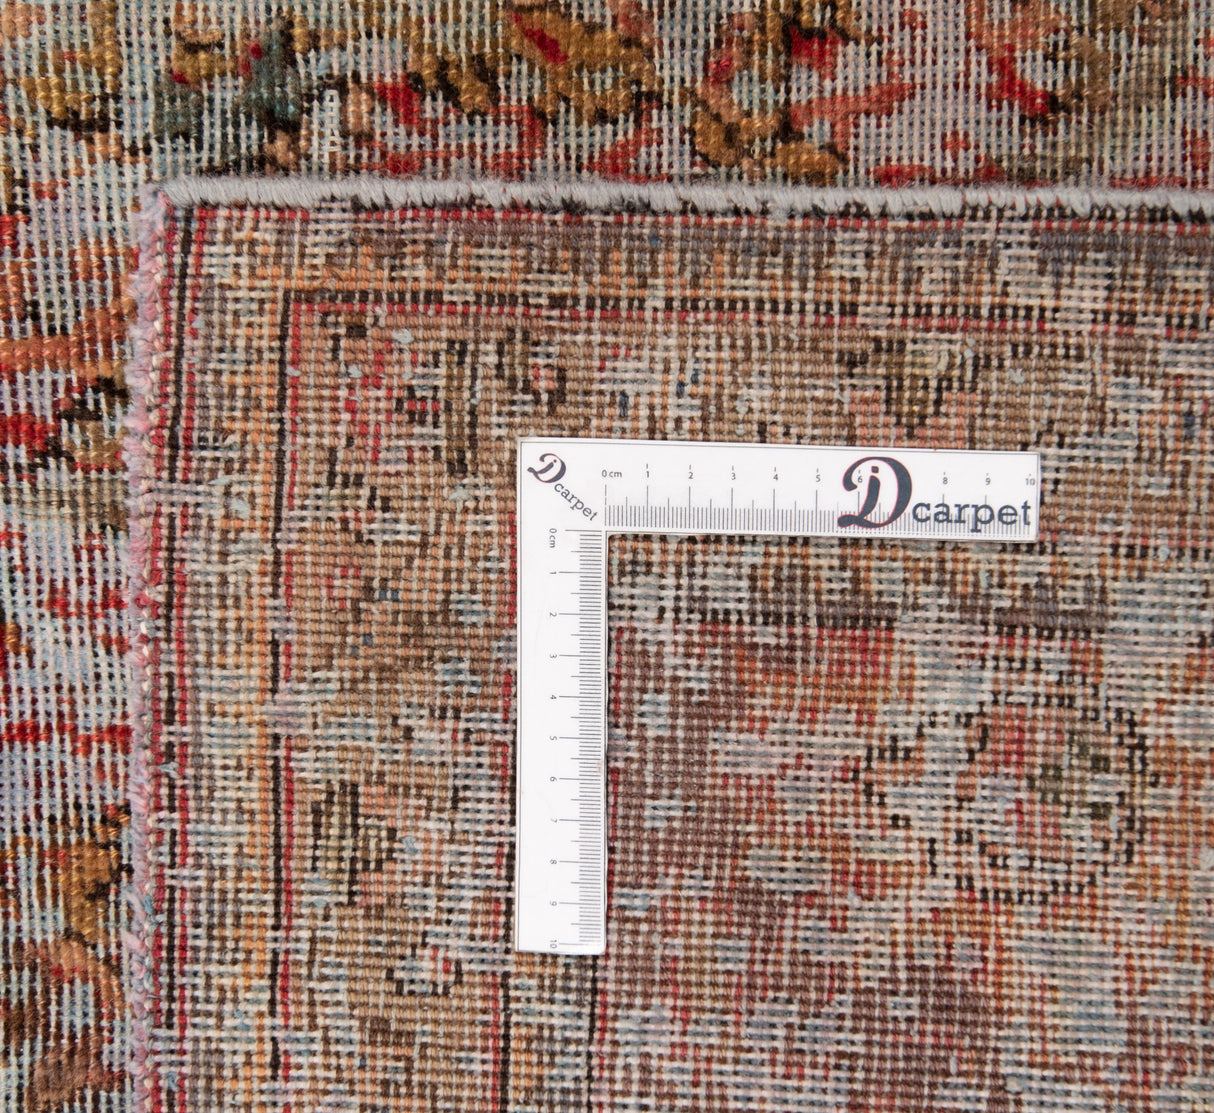 Carpete vintage | 348 x 249 cm